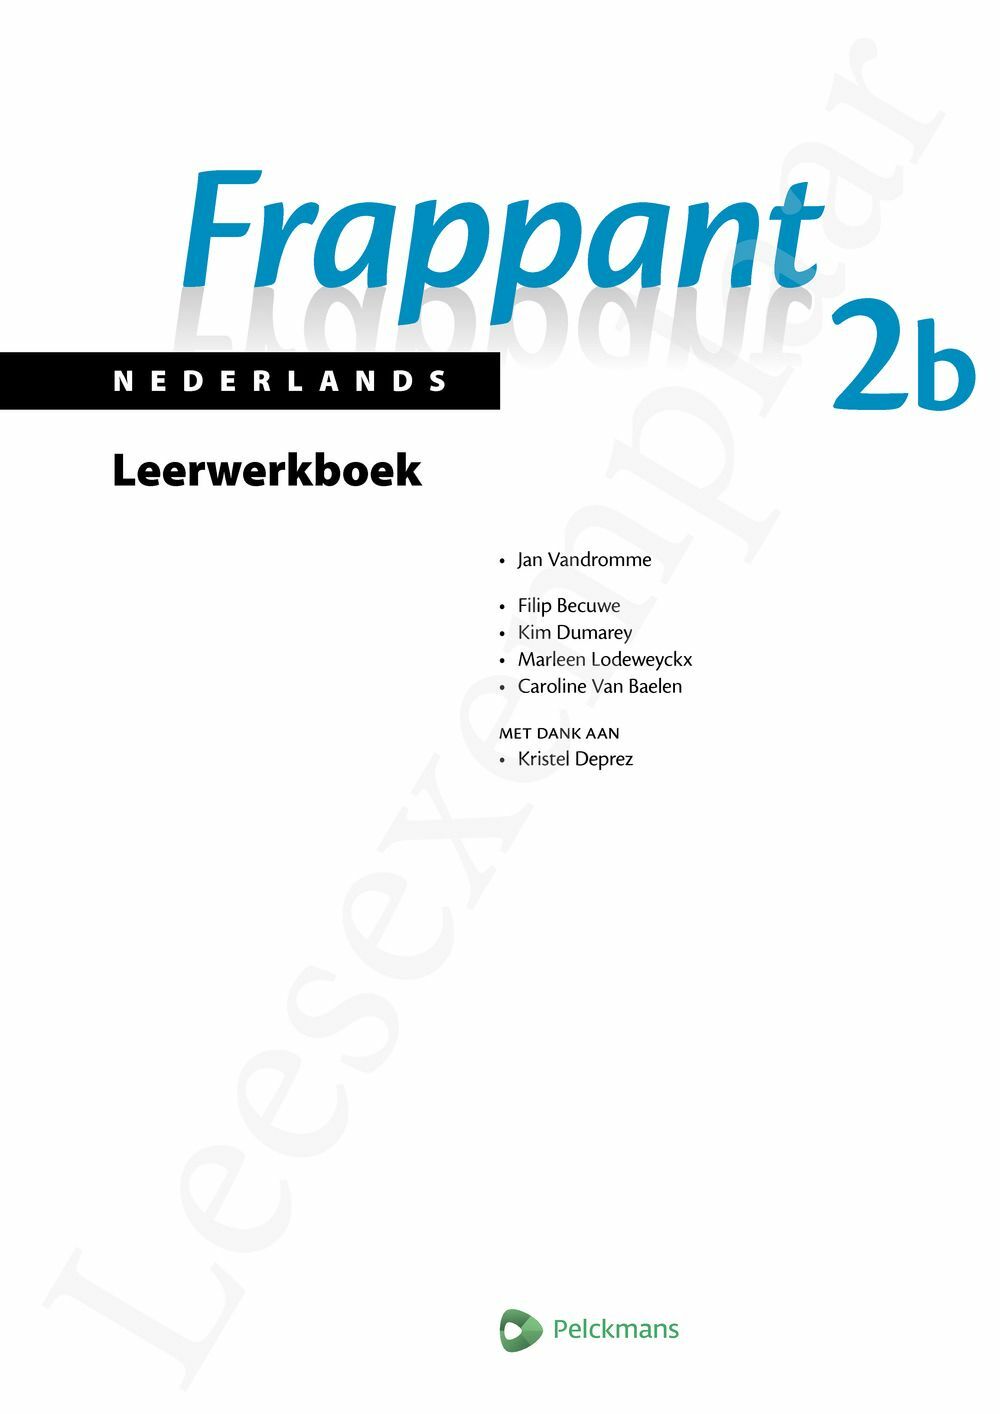 Preview: Frappant Nederlands 2b Leerwerkboek (incl. Pelckmans Portaal)